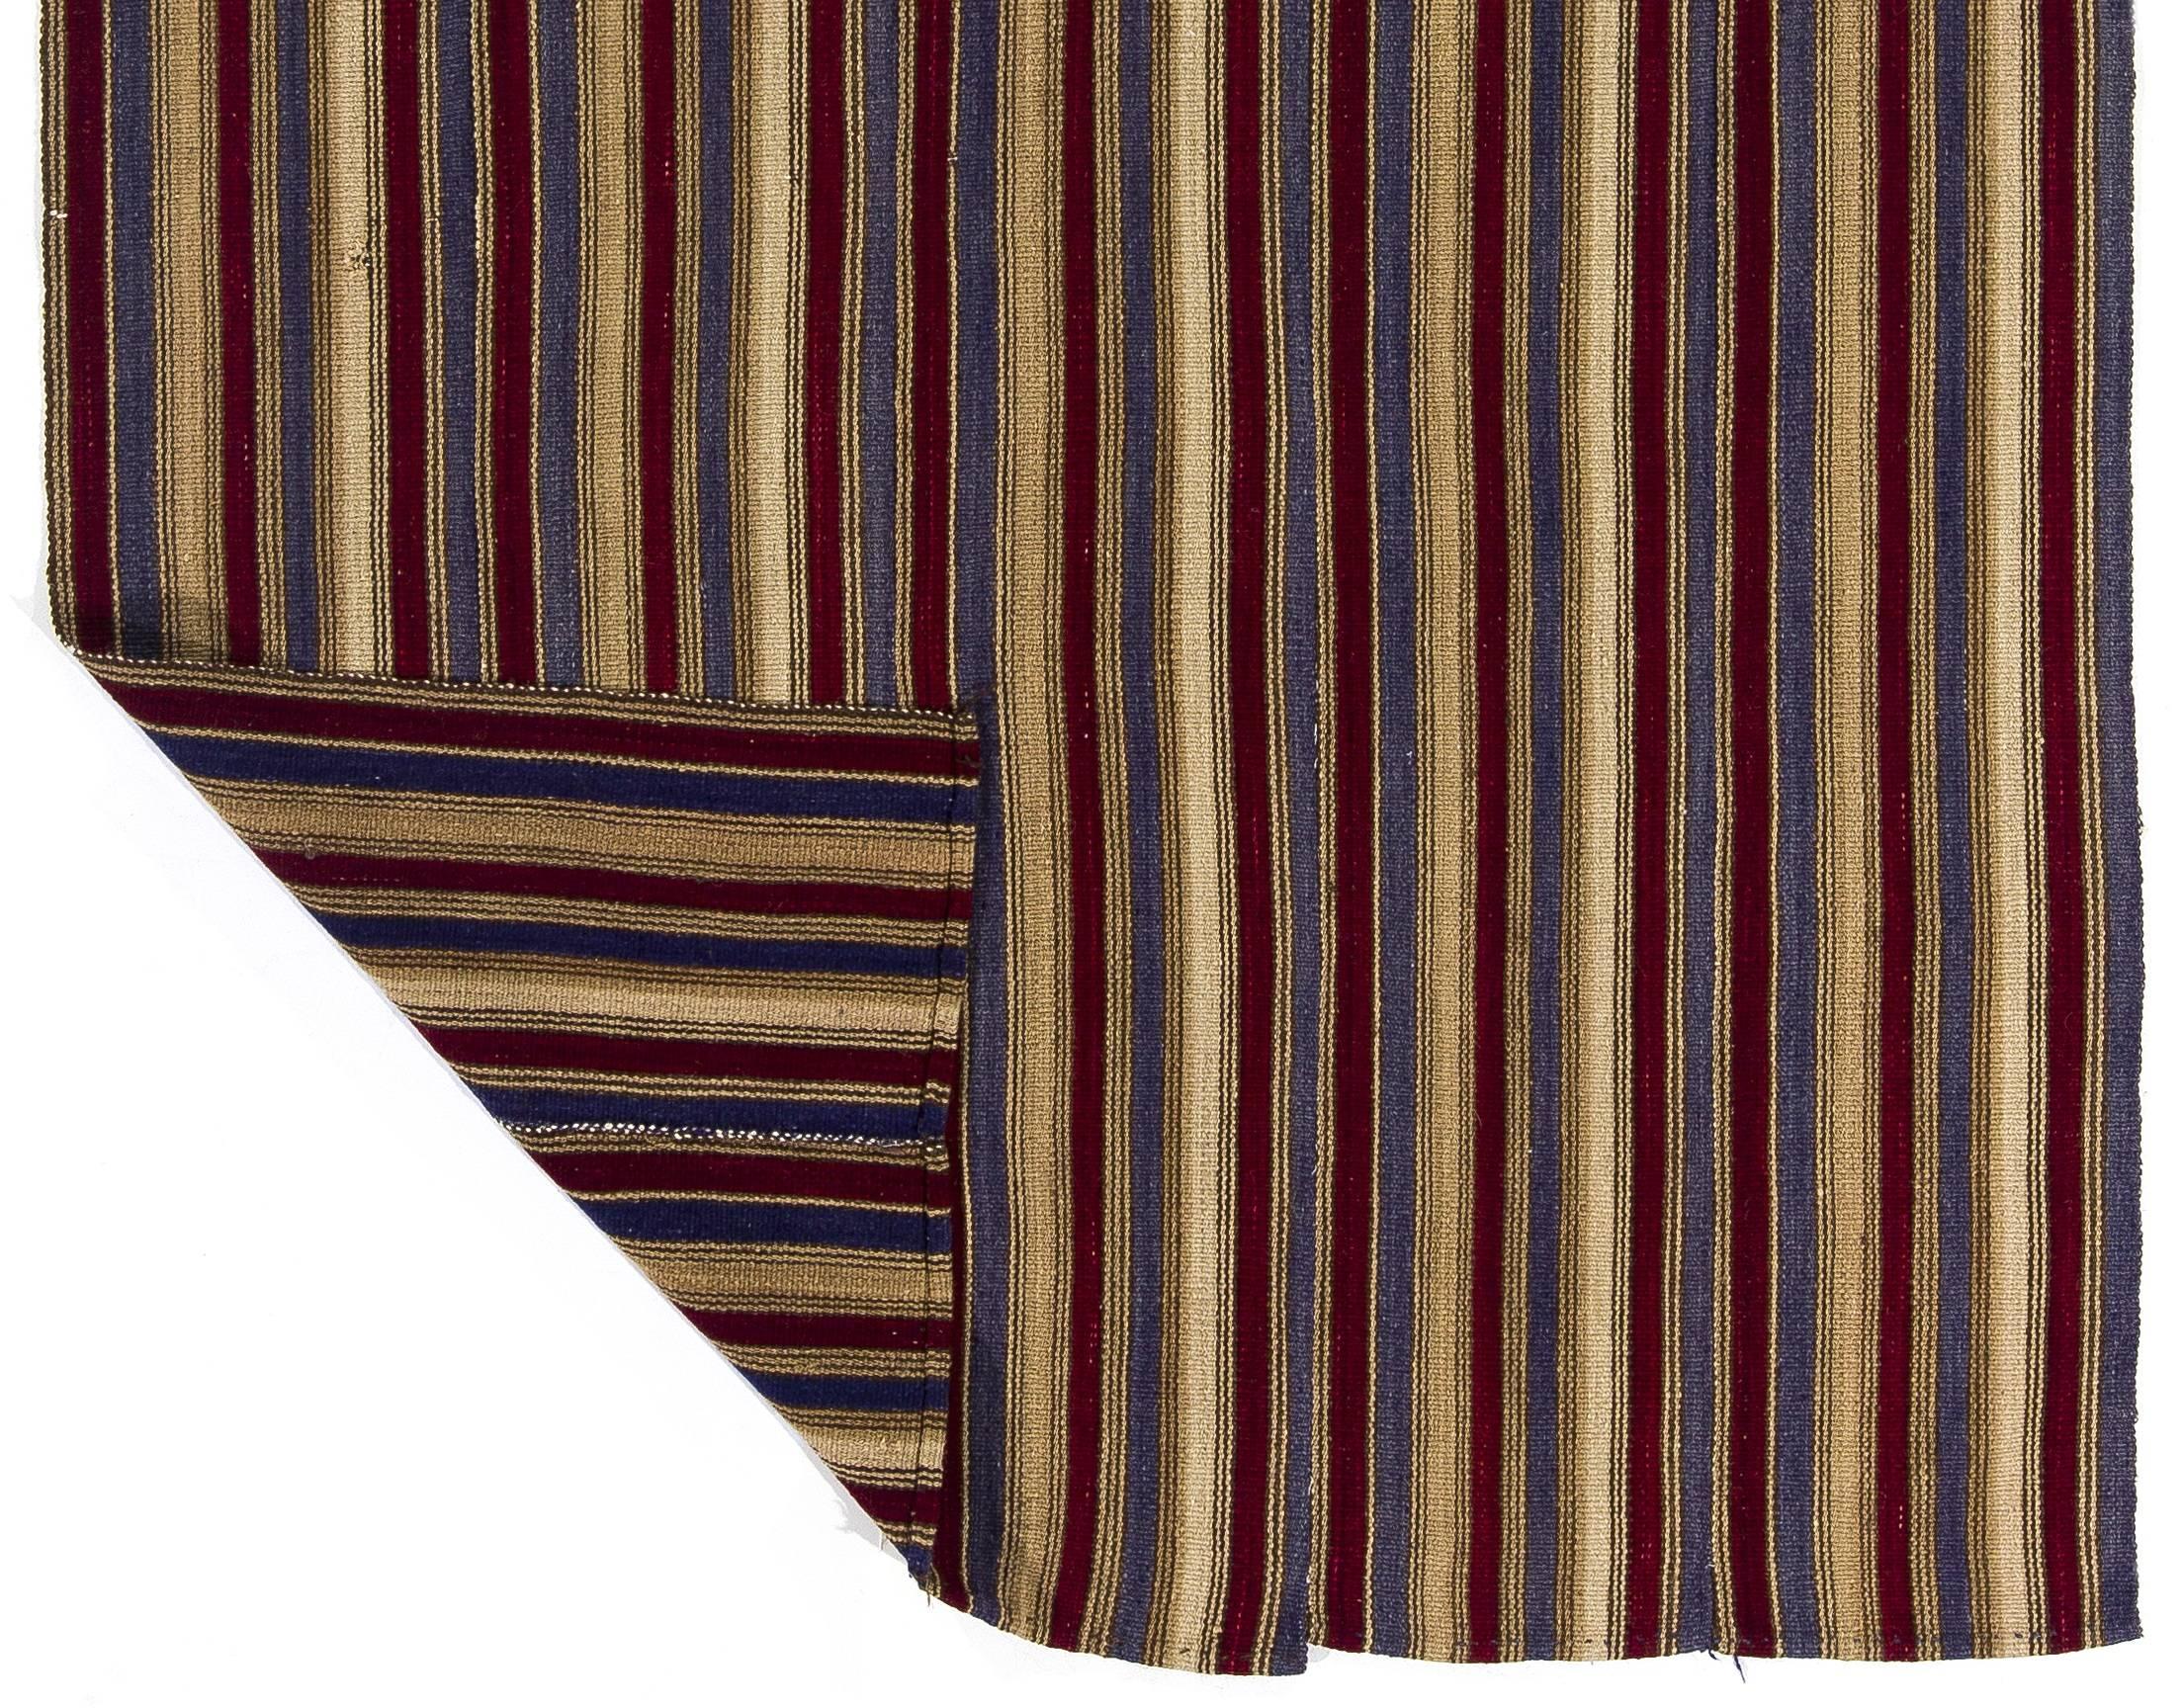 Ein handgewebter Vintage-Teppich aus der Osttürkei. Es ist aus natürlich gefärbter Wolle hergestellt. Diese Art von Kelims wurde im 20. Jahrhundert in ganz Anatolien für den täglichen Gebrauch und nicht für den Wiederverkauf oder den Export